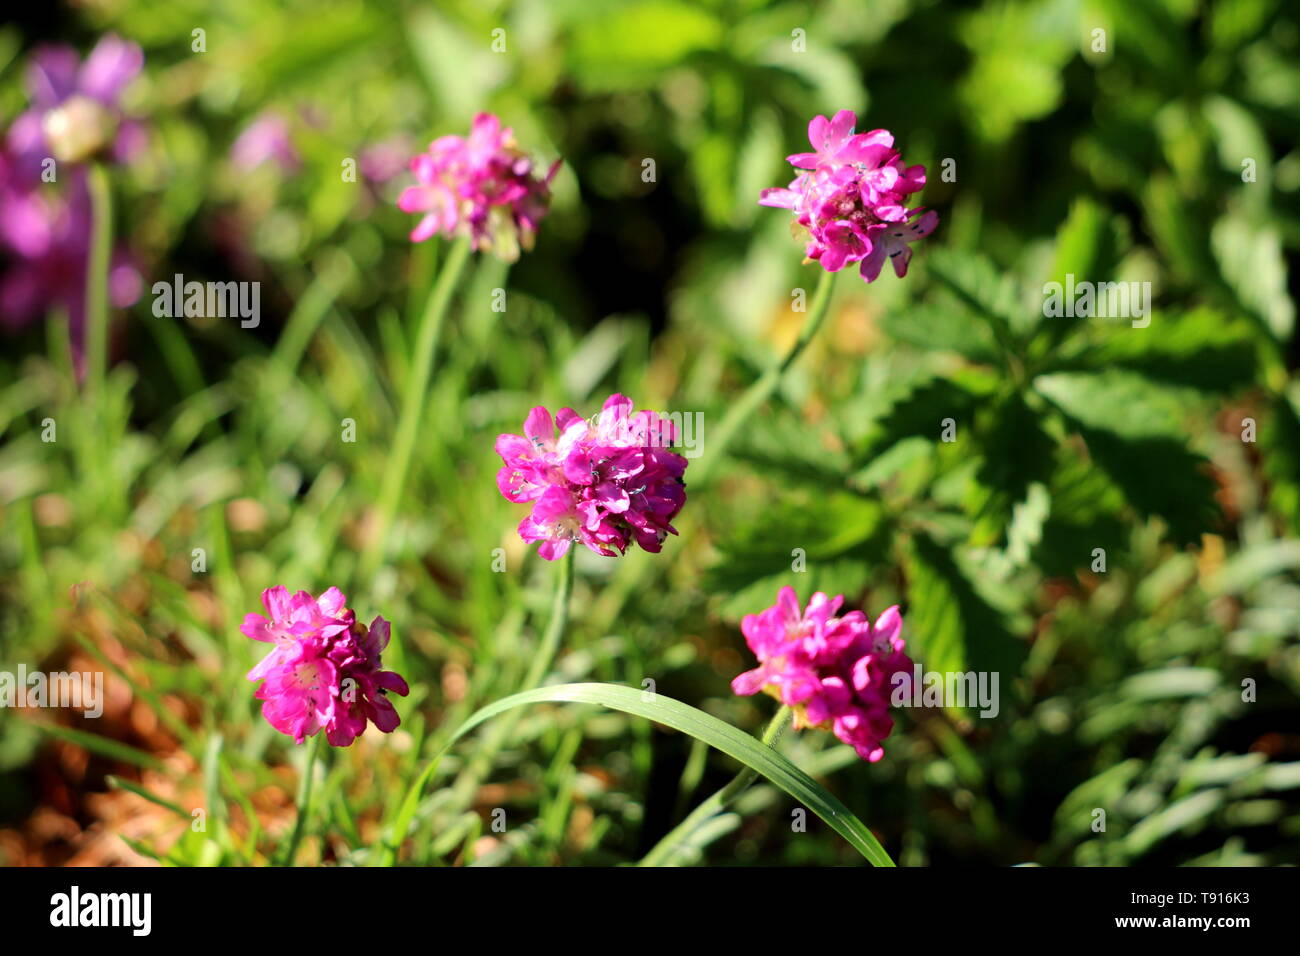 Sparsamkeit oder Armeria maritima oder Meer Sparsamkeit oder Meer pink  Kompakte mehrjährig blühende Pflanze mit kleinen rosa Blüten mit Gras und  andere Pflanzen umgeben Stockfotografie - Alamy